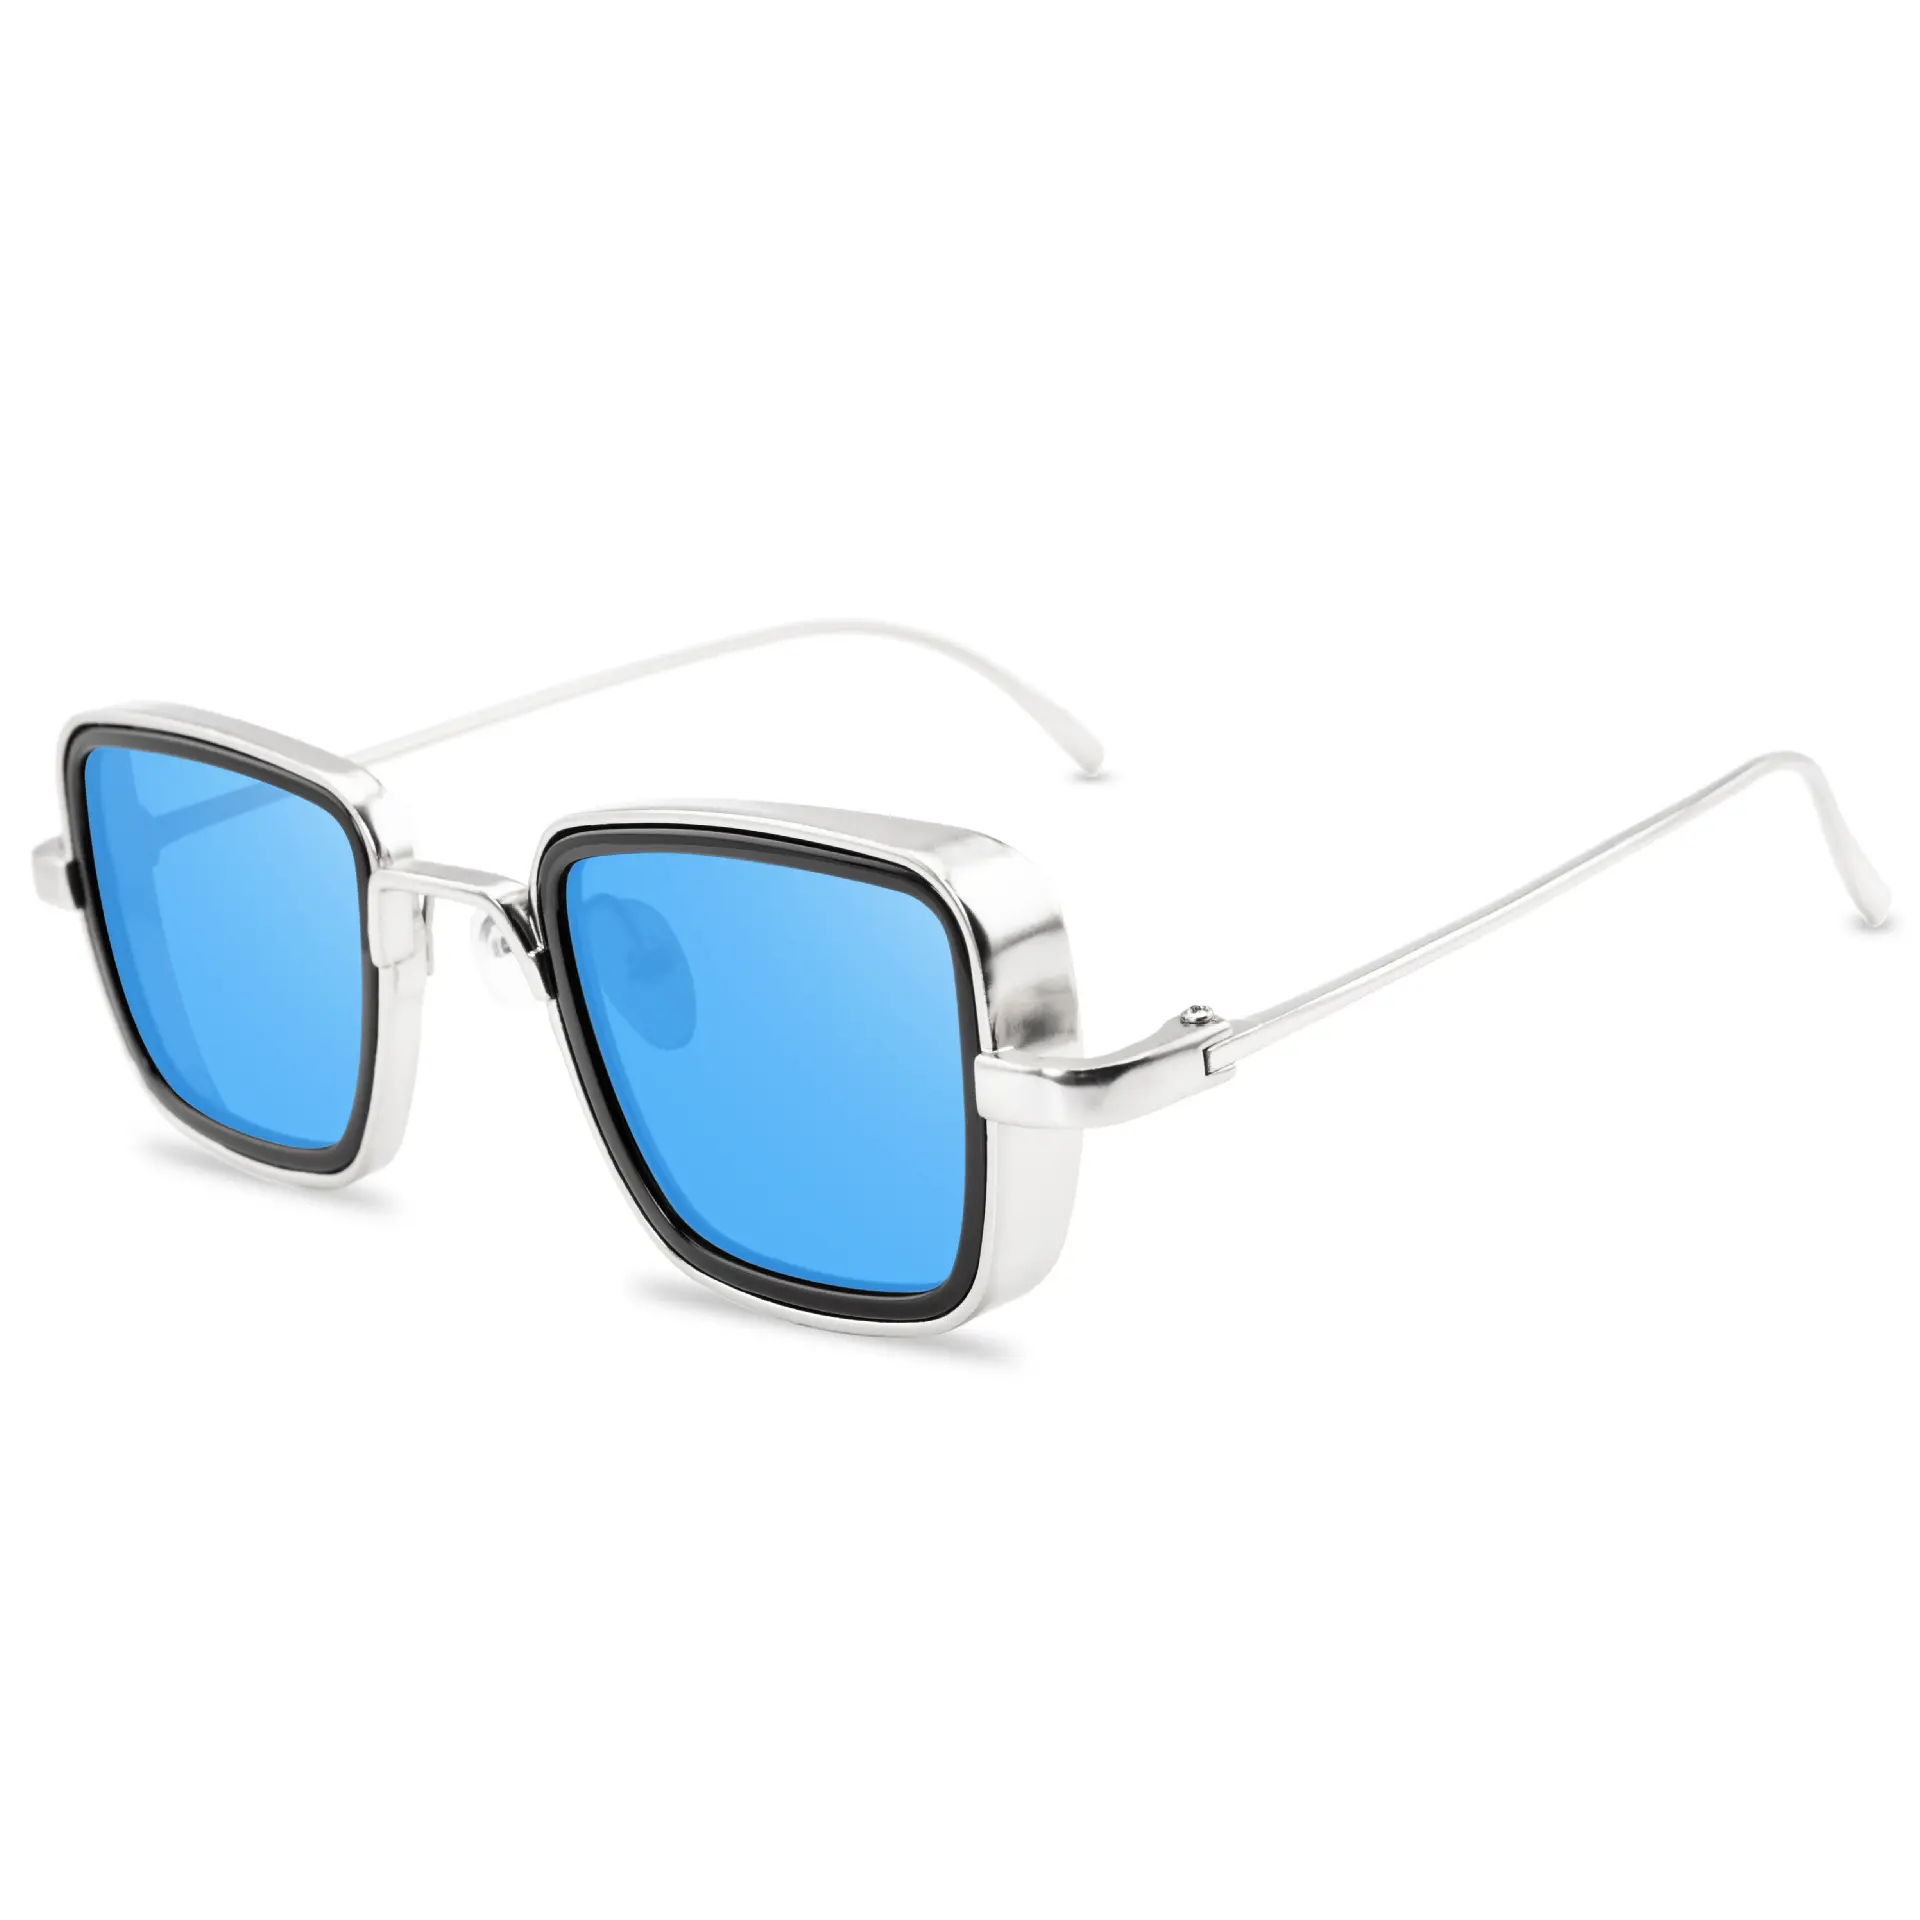 نظارات دويزر المعدنية الحديثة المخصصة للرجال والنساء, نظارات شمس أنيقة ومخصصة لعام 2022